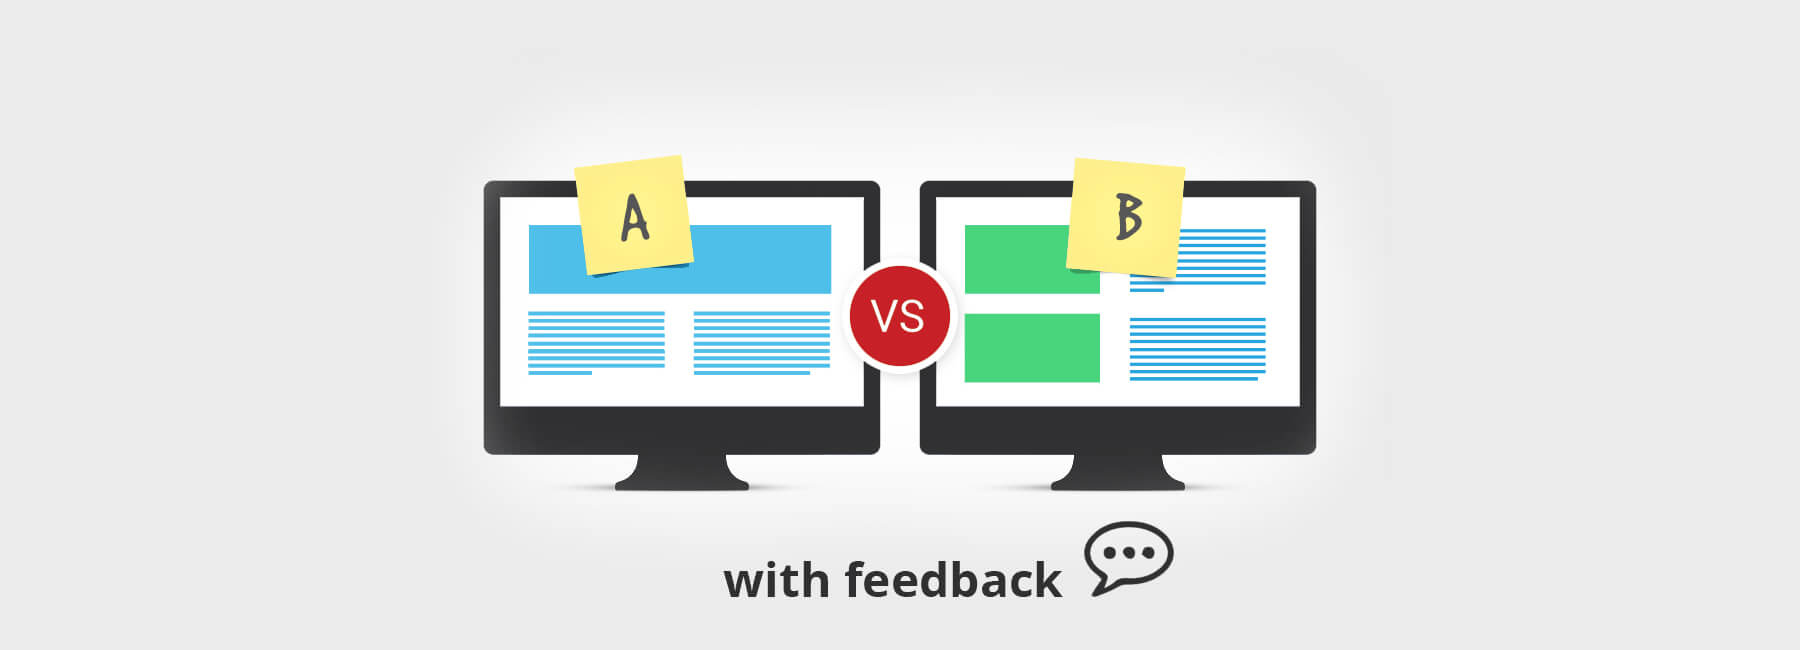 Optimieren Sie Ihr A/B-Testing mit Online-Kundenfeedback